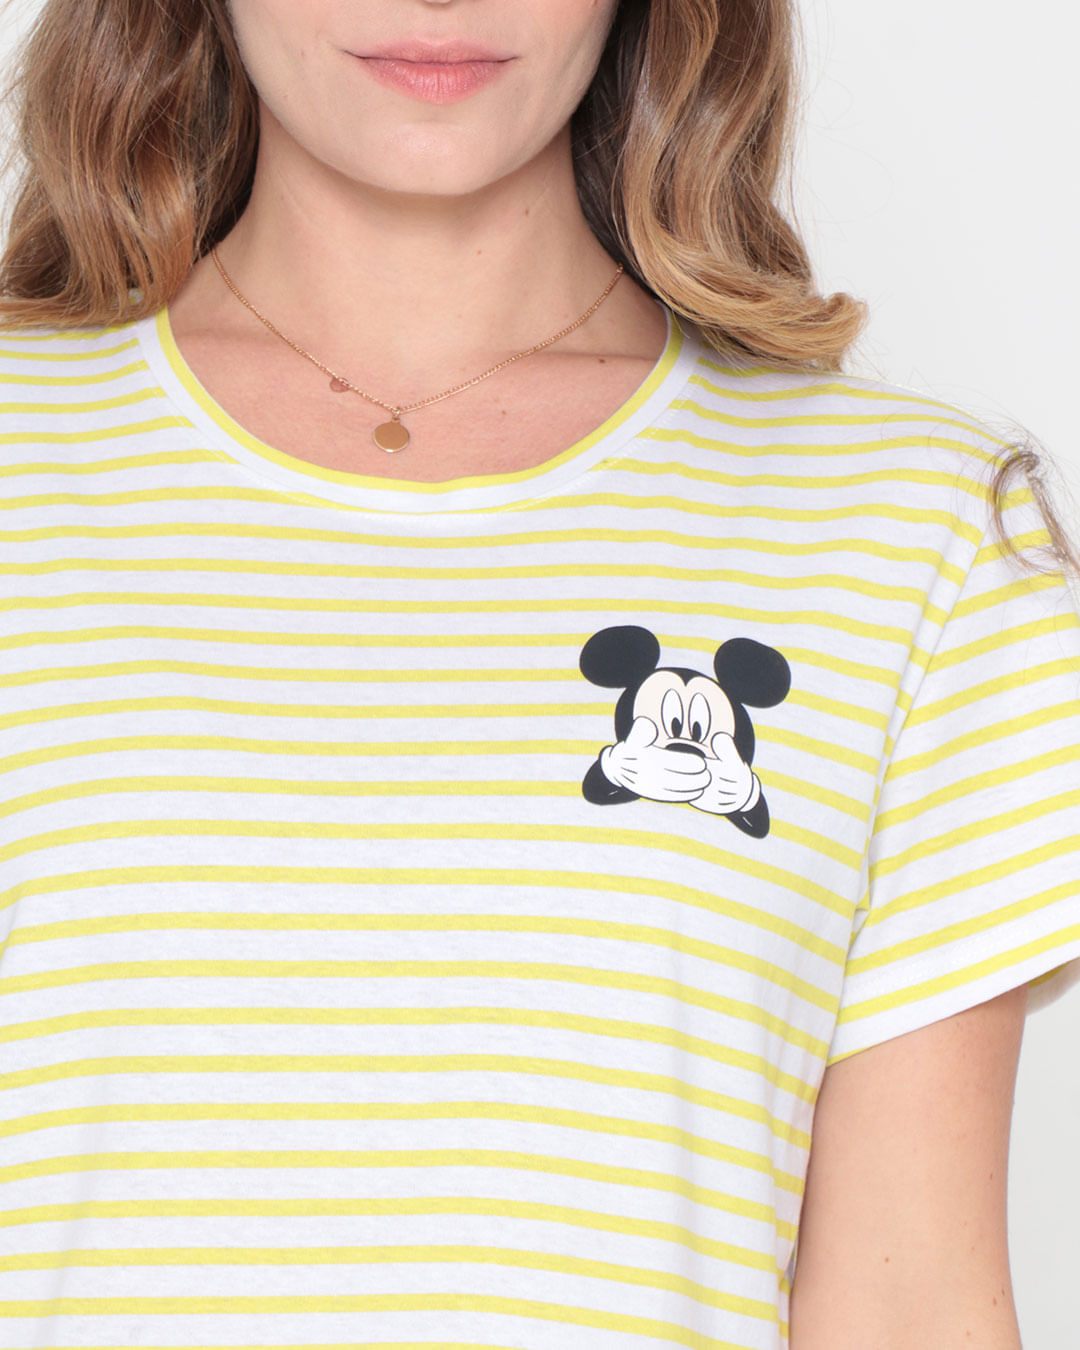 Camiseta-Cropped-Listras-Estampa-Mickey-Disney-Off-White